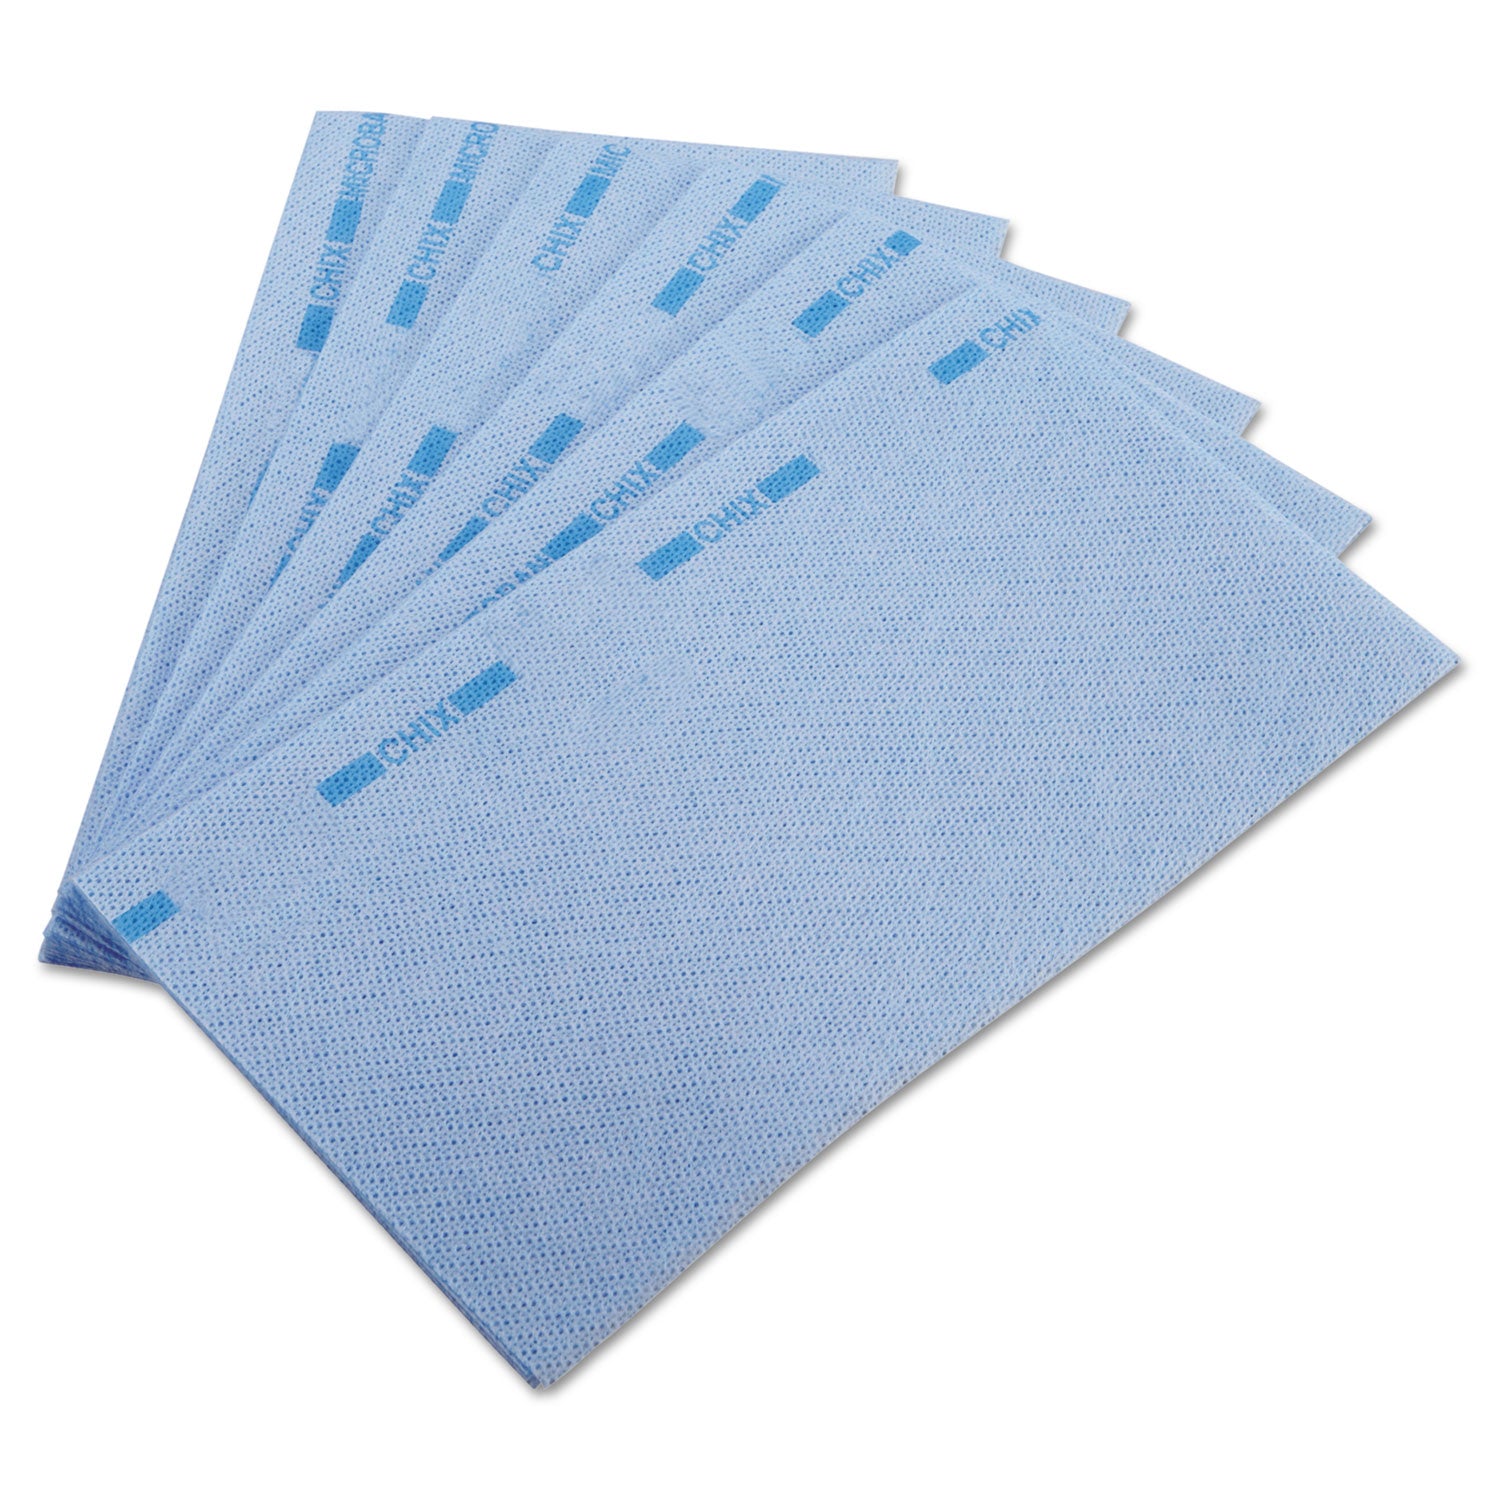 Food Service Towels, 13 x 24, Blue, 150/Carton - 